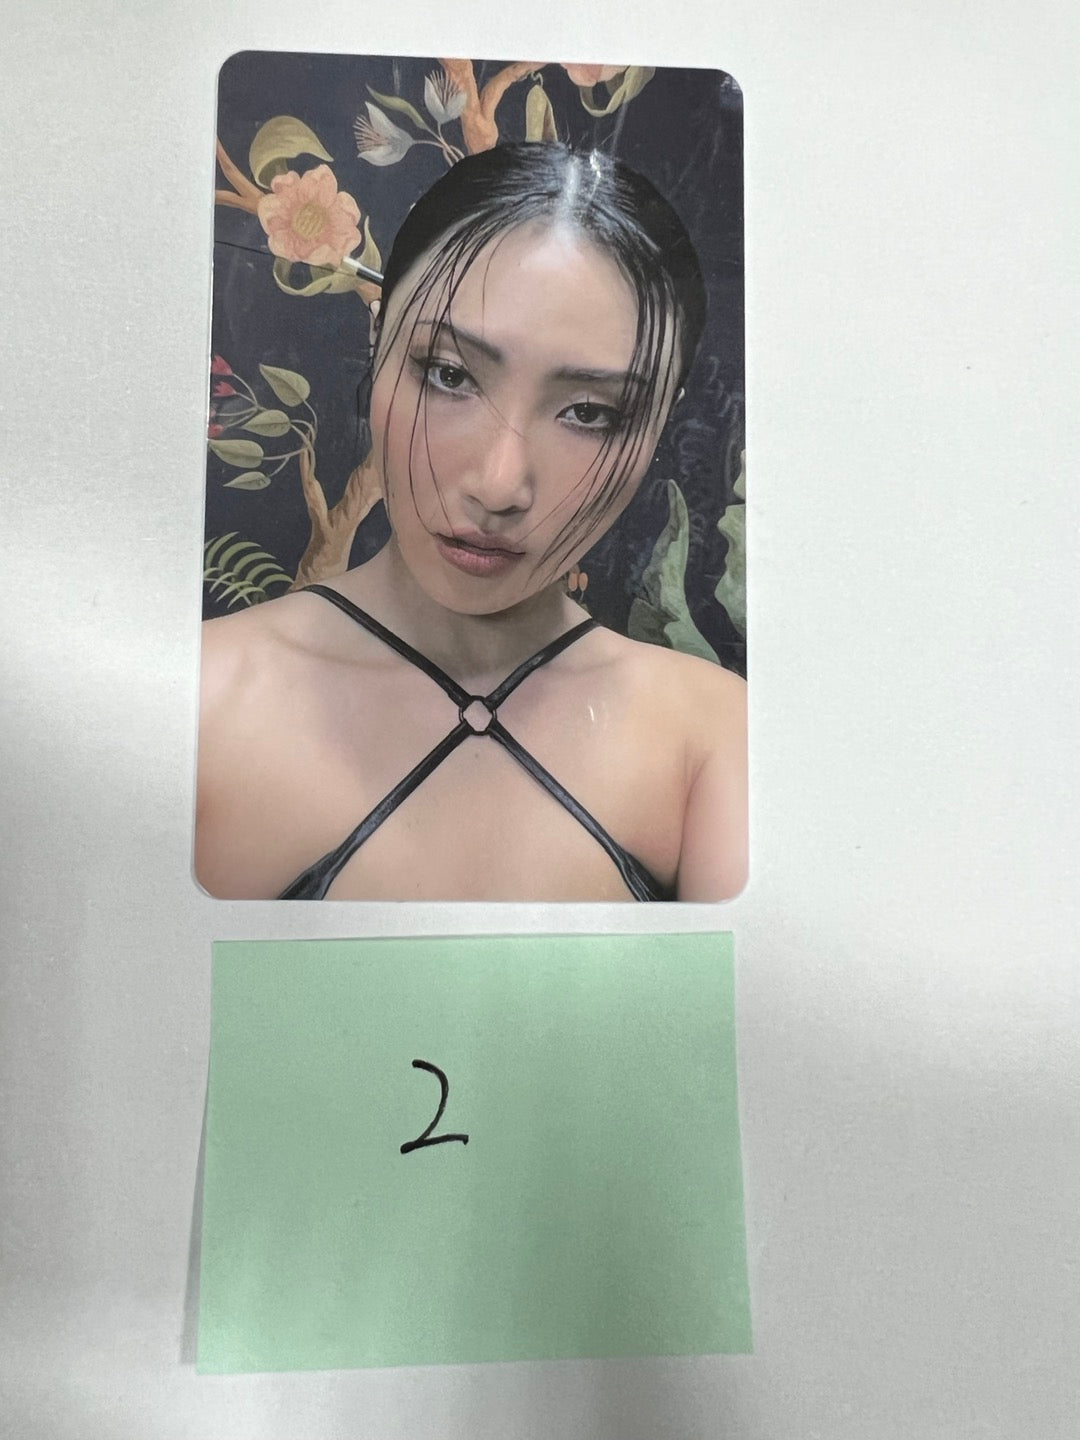 화사 "Guilty Pleasure" - 후즈팬 카페 이벤트 PVC 포토카드, 공식 포토카드, 4 x 6 포토